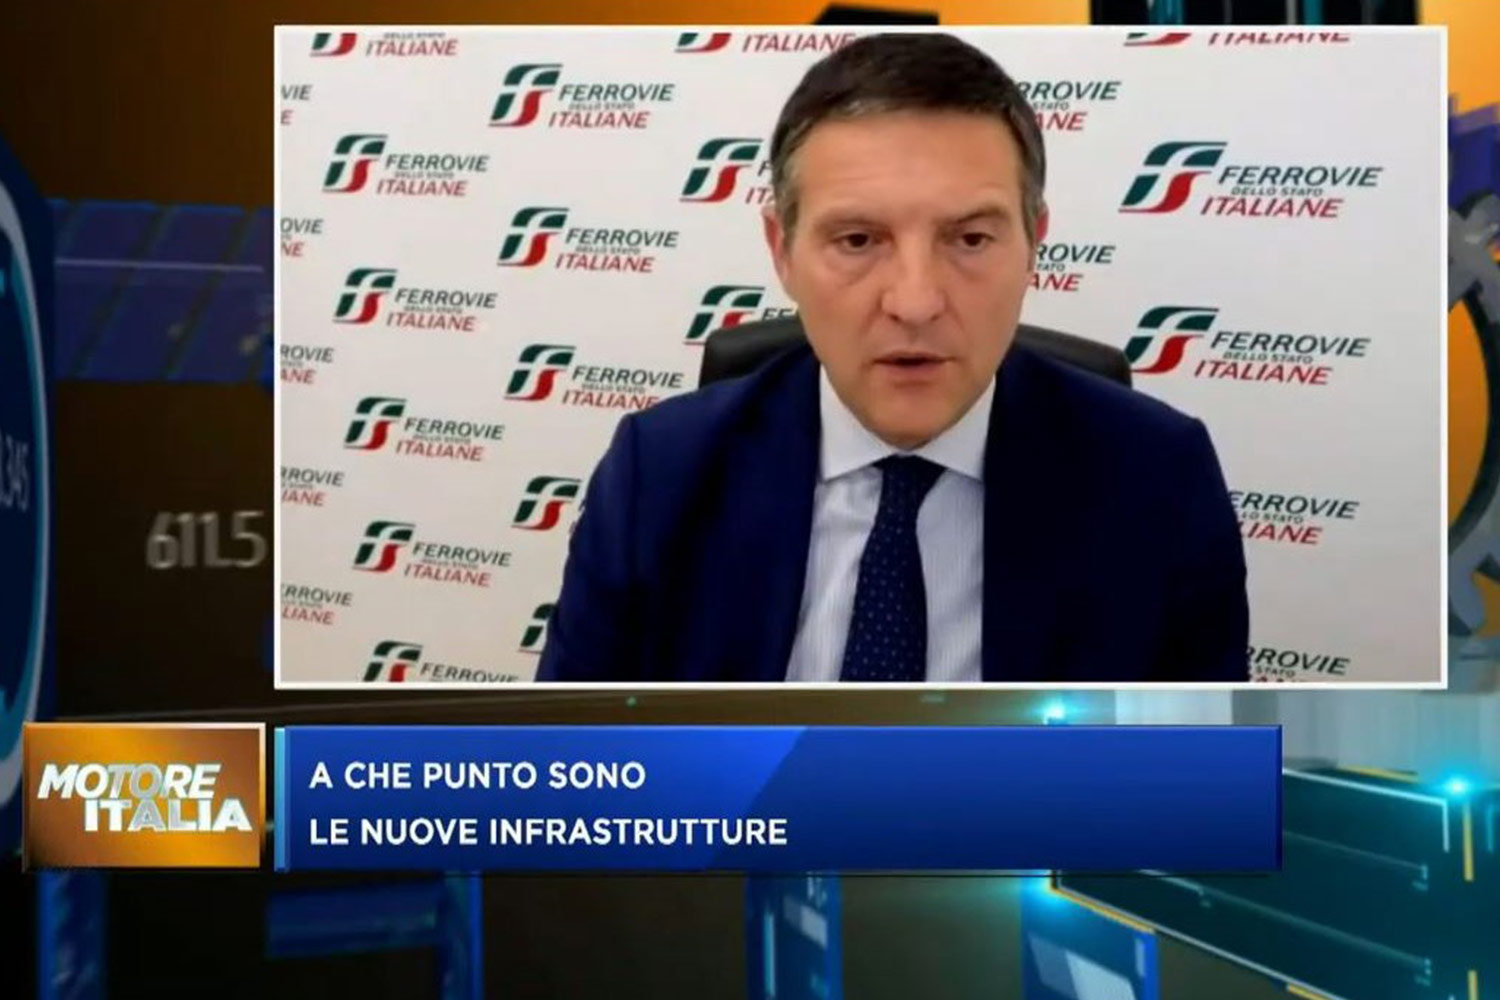 Roberto Tundo, Chief Technology, Innovation & Digital Officer di FS Italiane, all’evento di Class Editori Motore Italia in Veneto